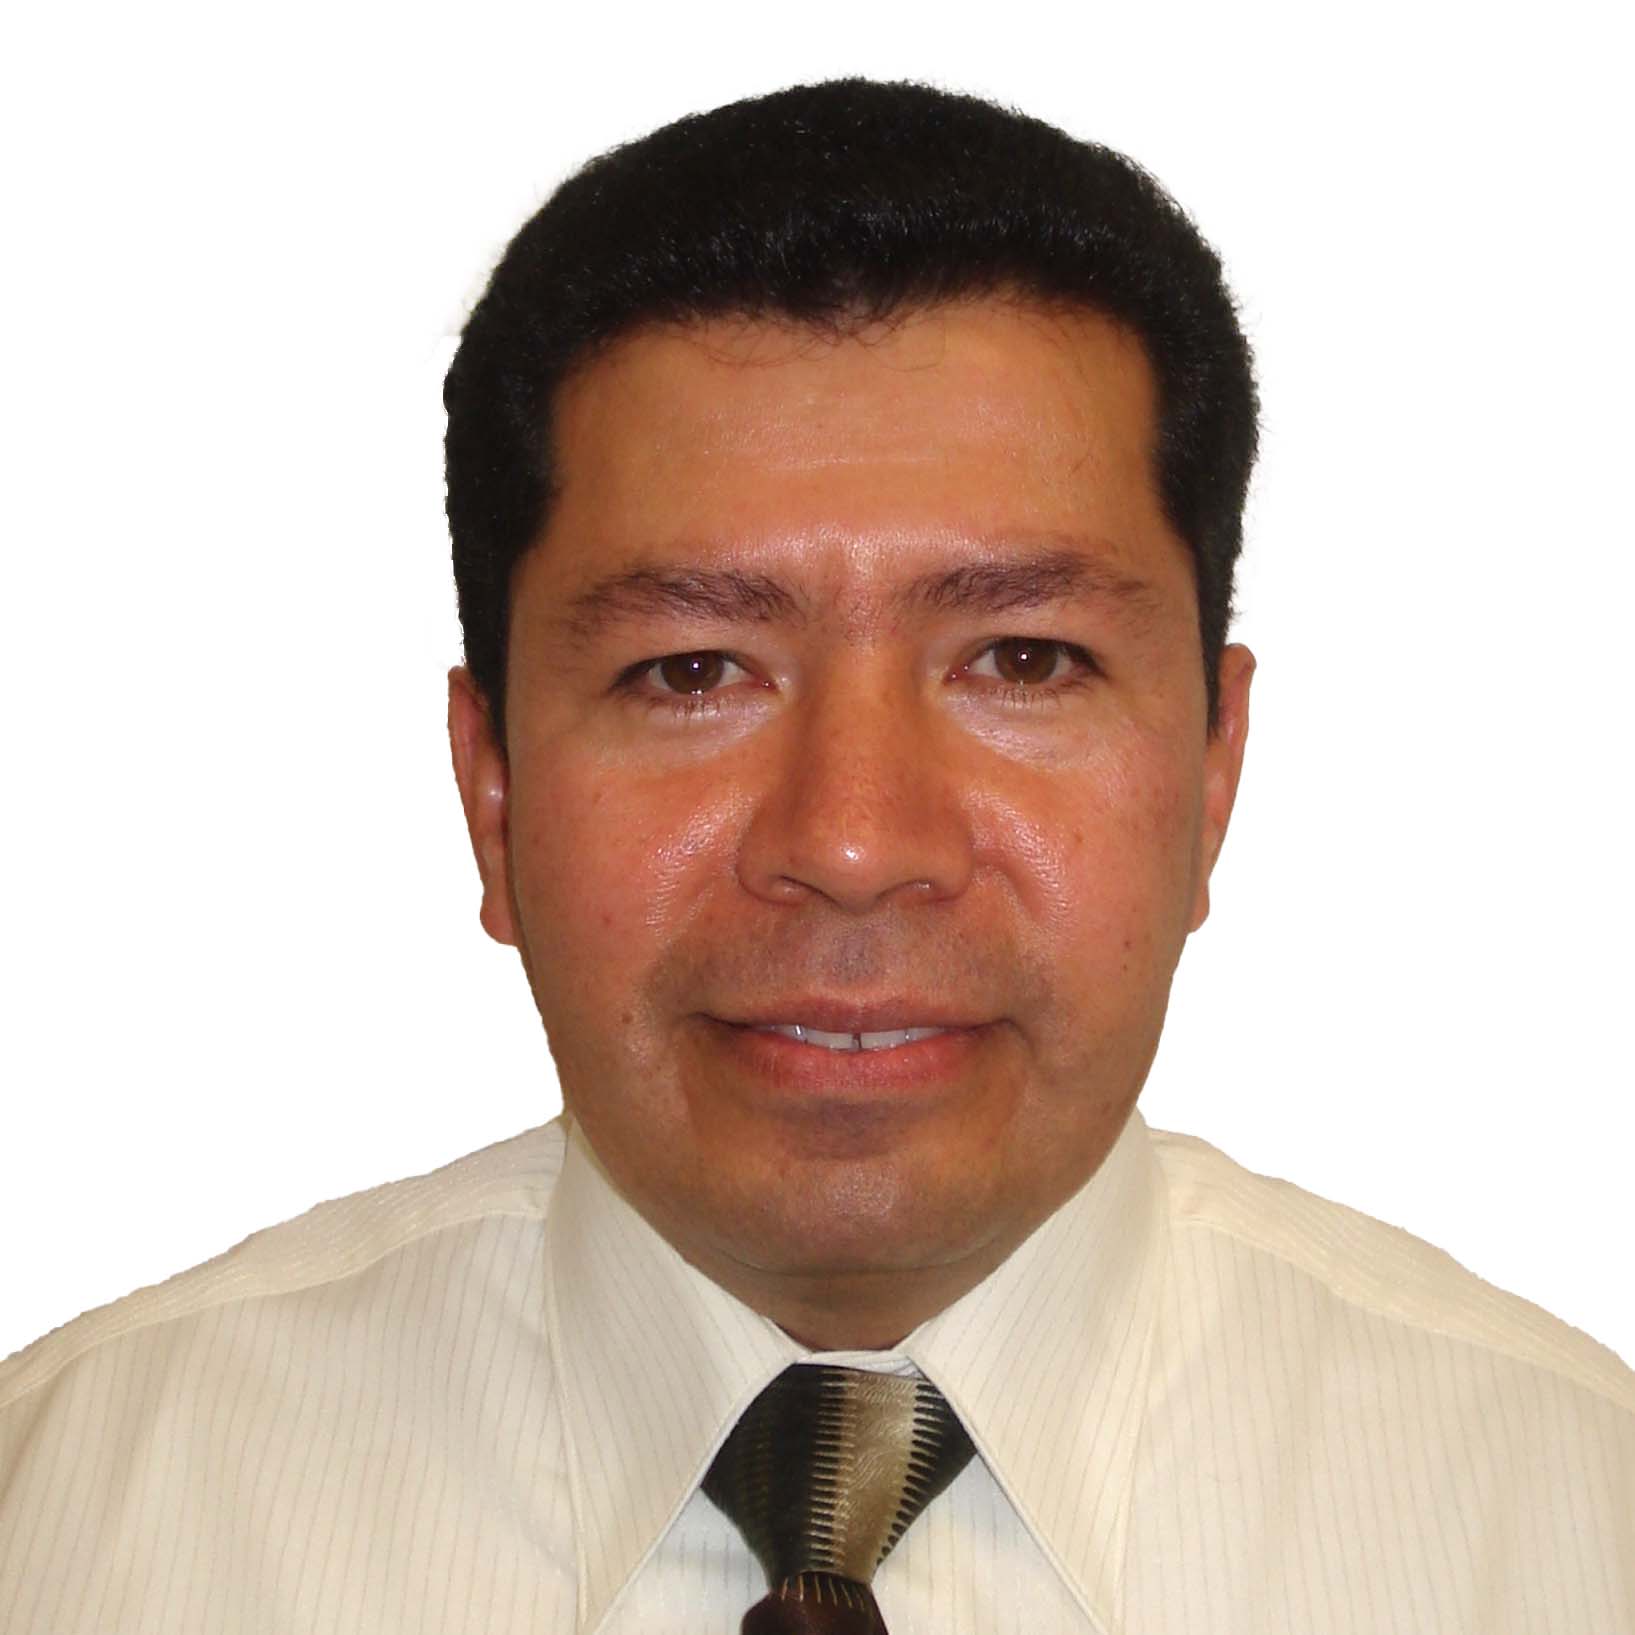 Dr. Antonio Rodarte Chávez
Dirección General Adjunta de Crédito